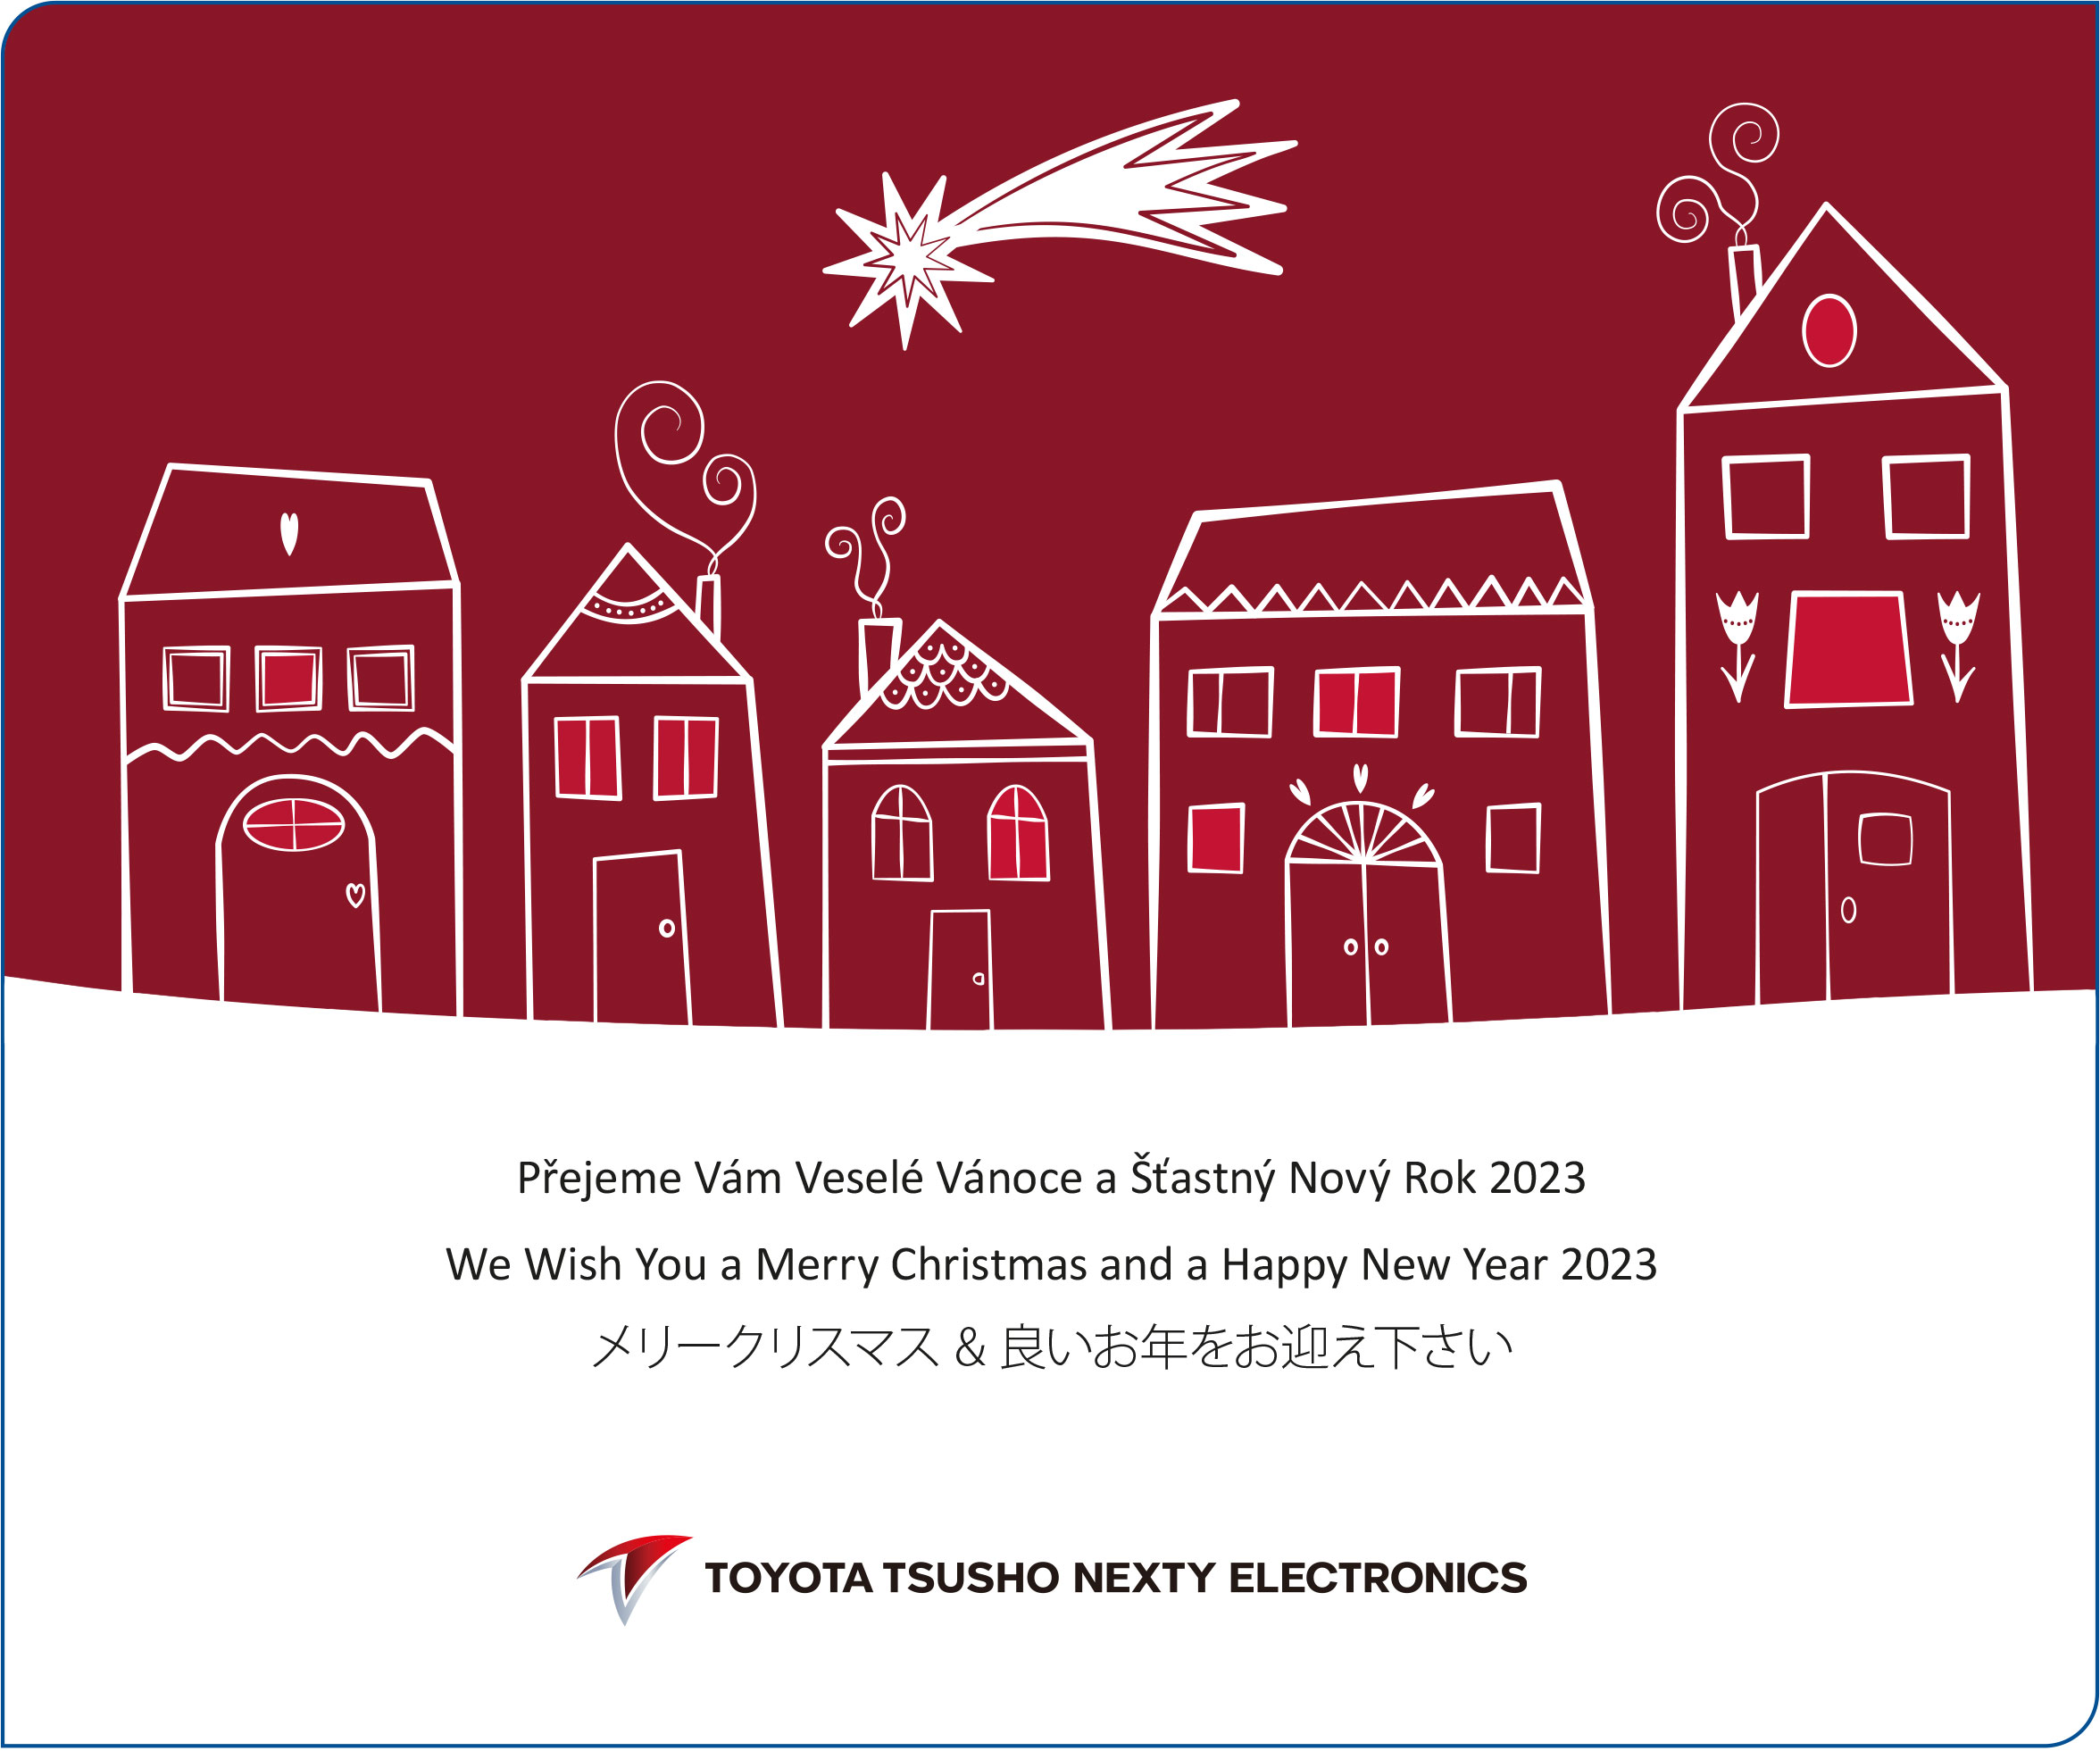 Přejeme Vám Veselé Vánoce a Šťastný Nový Rok 2023   

We Wish You a Merry Christmas and a Happy New Year 2023

Toyota Tsusho Nexty Electronics